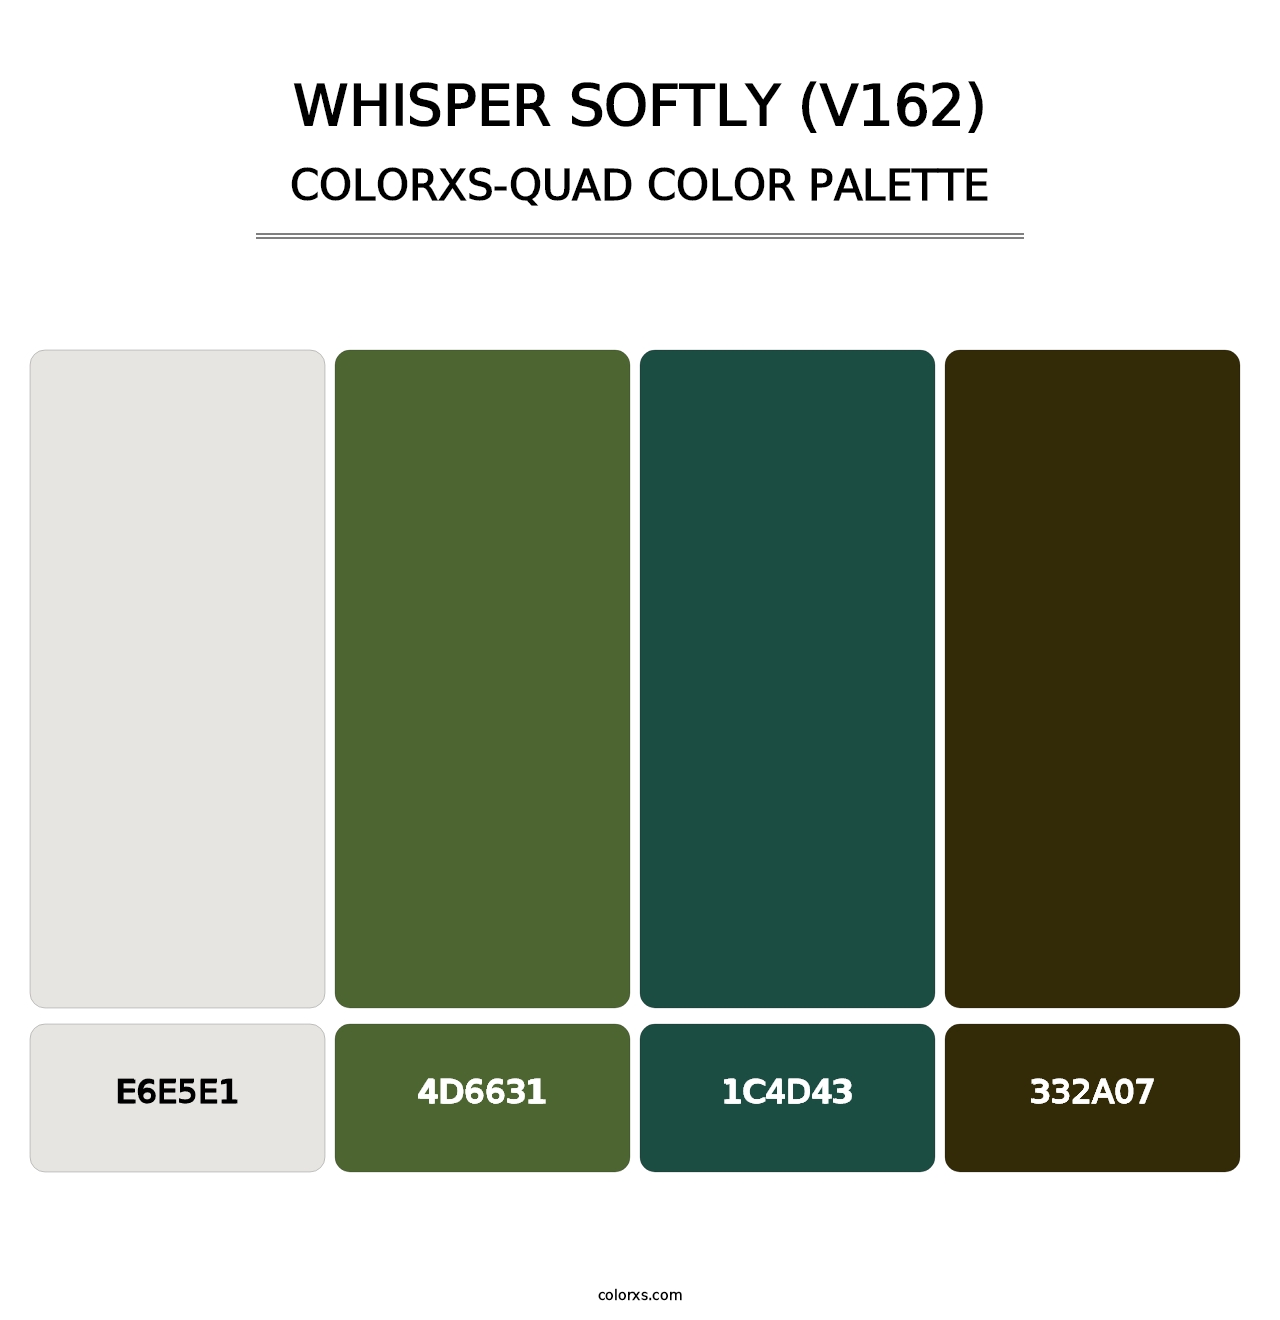 Whisper Softly (V162) - Colorxs Quad Palette